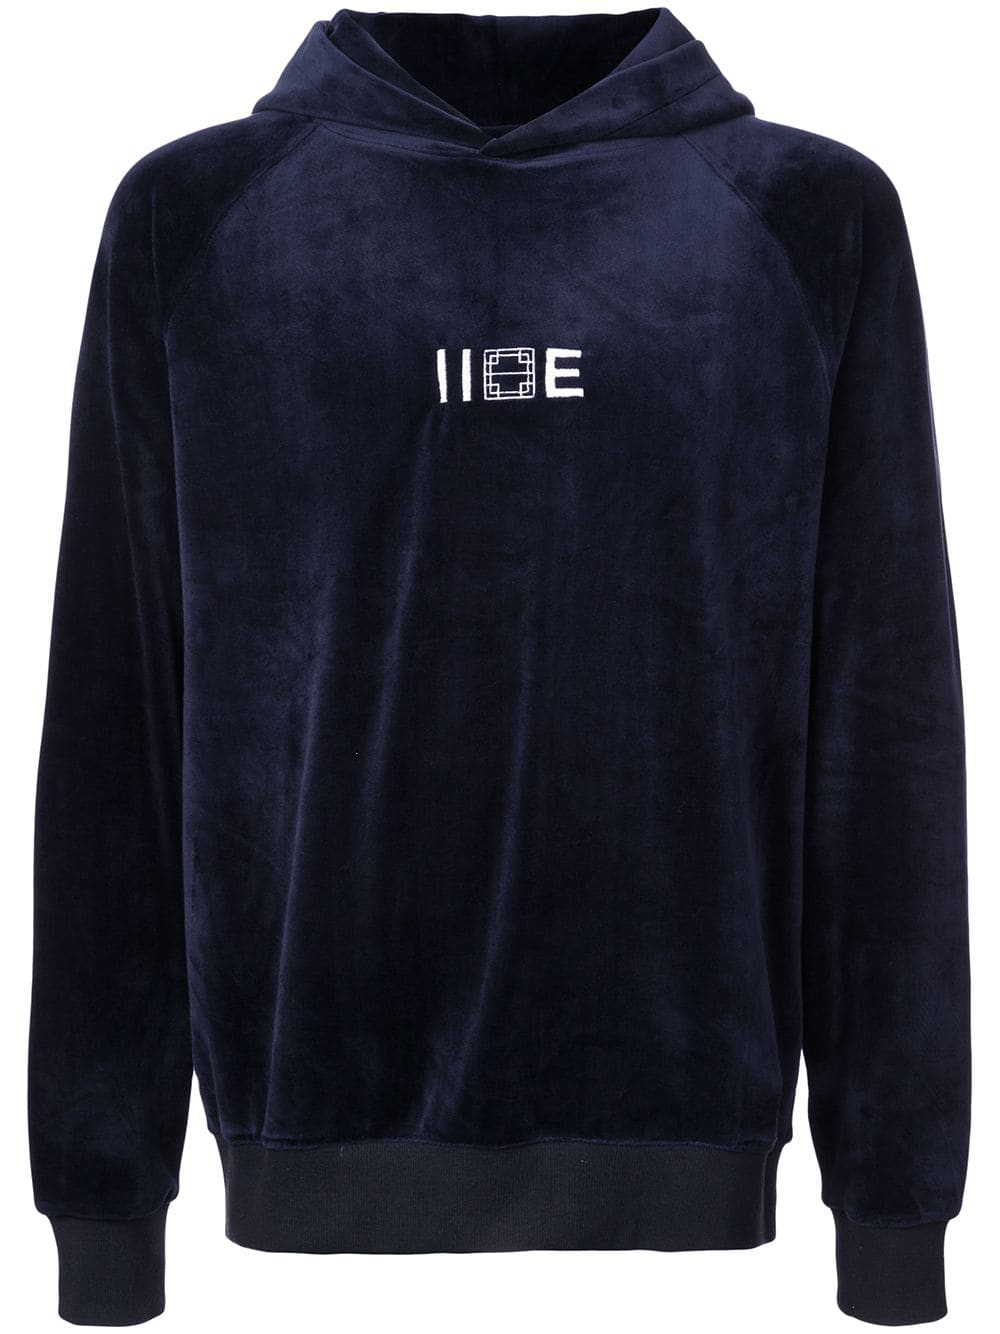 Iise Logo Hooded Sweatshirt.